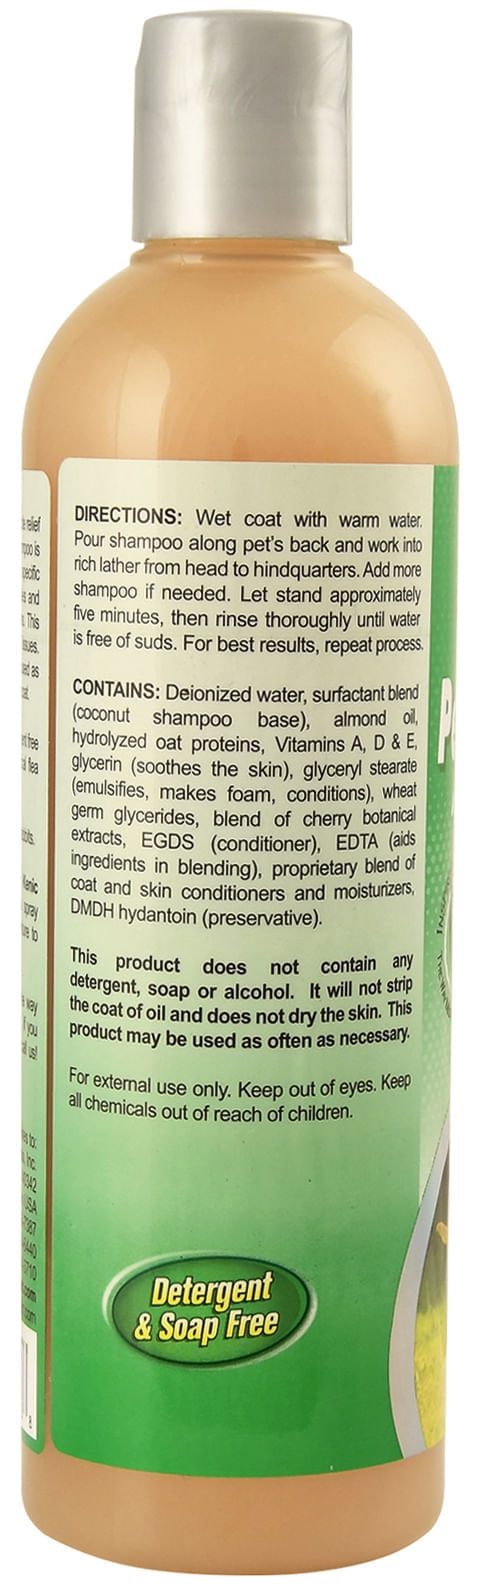 17-oz-Oatmeal-Pet-Shampoo